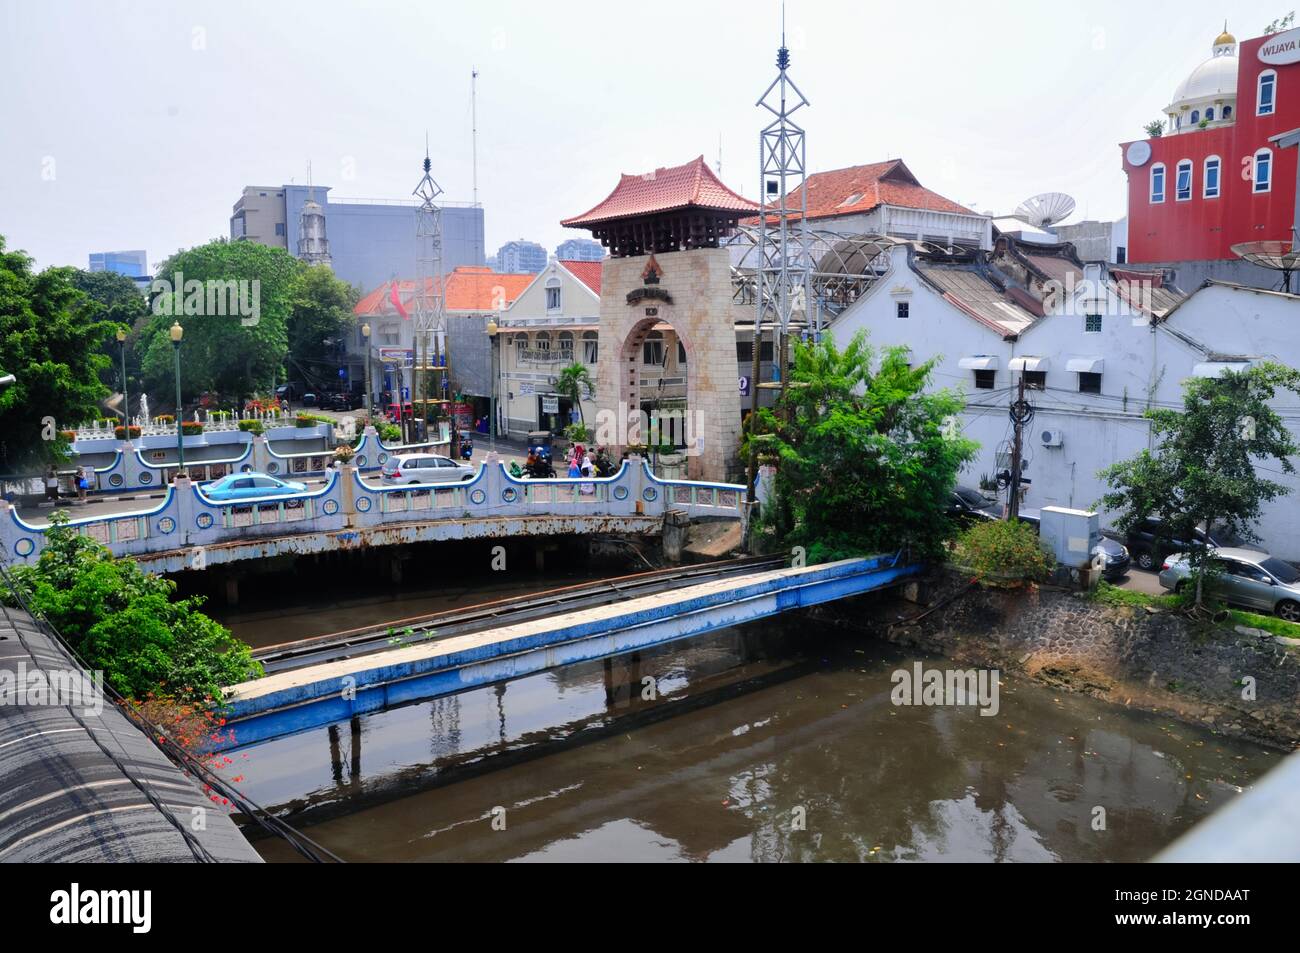 Brücke und Tor zum Pasar Baroe aus einer Höhe. Pasar Baru ist ein Markt- und Einkaufsviertel in Jakarta, das es schon seit langem gibt. Stockfoto